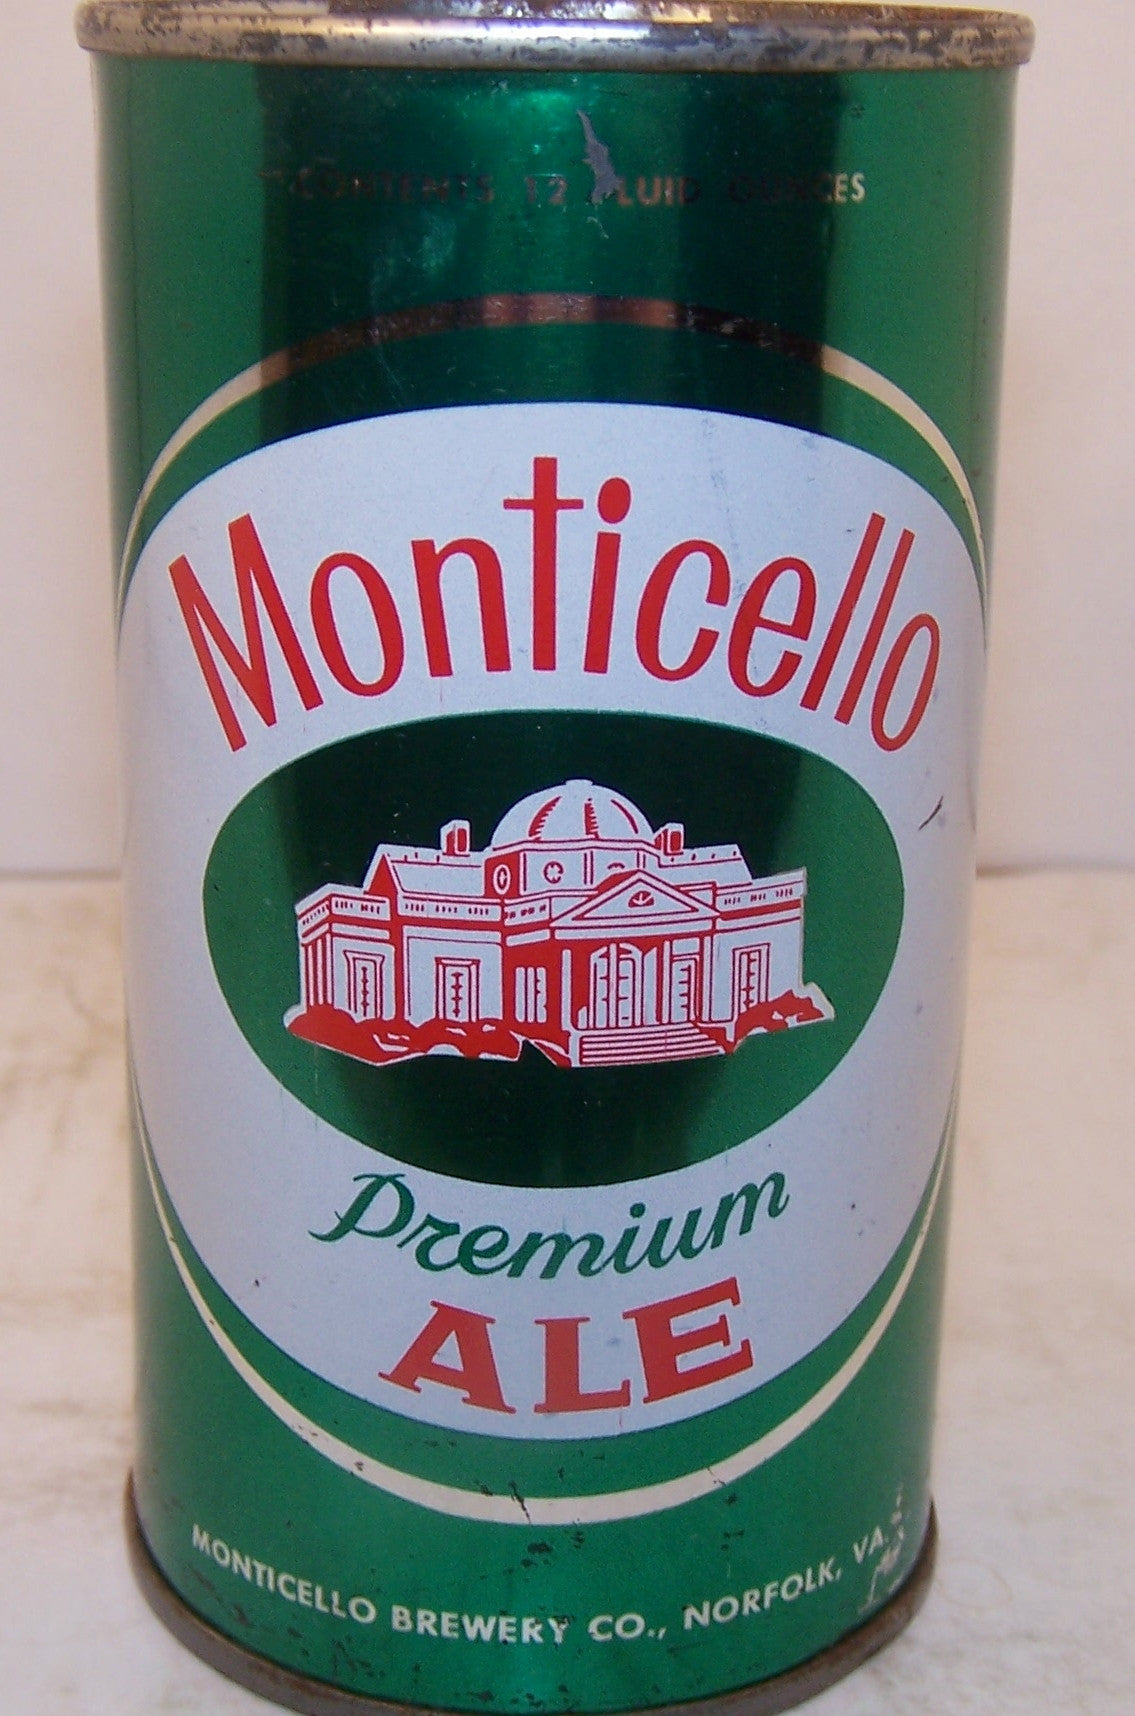 Monticello Premium Ale, USBC II 95-4 Grade 1/1- Sold on 4/12/15